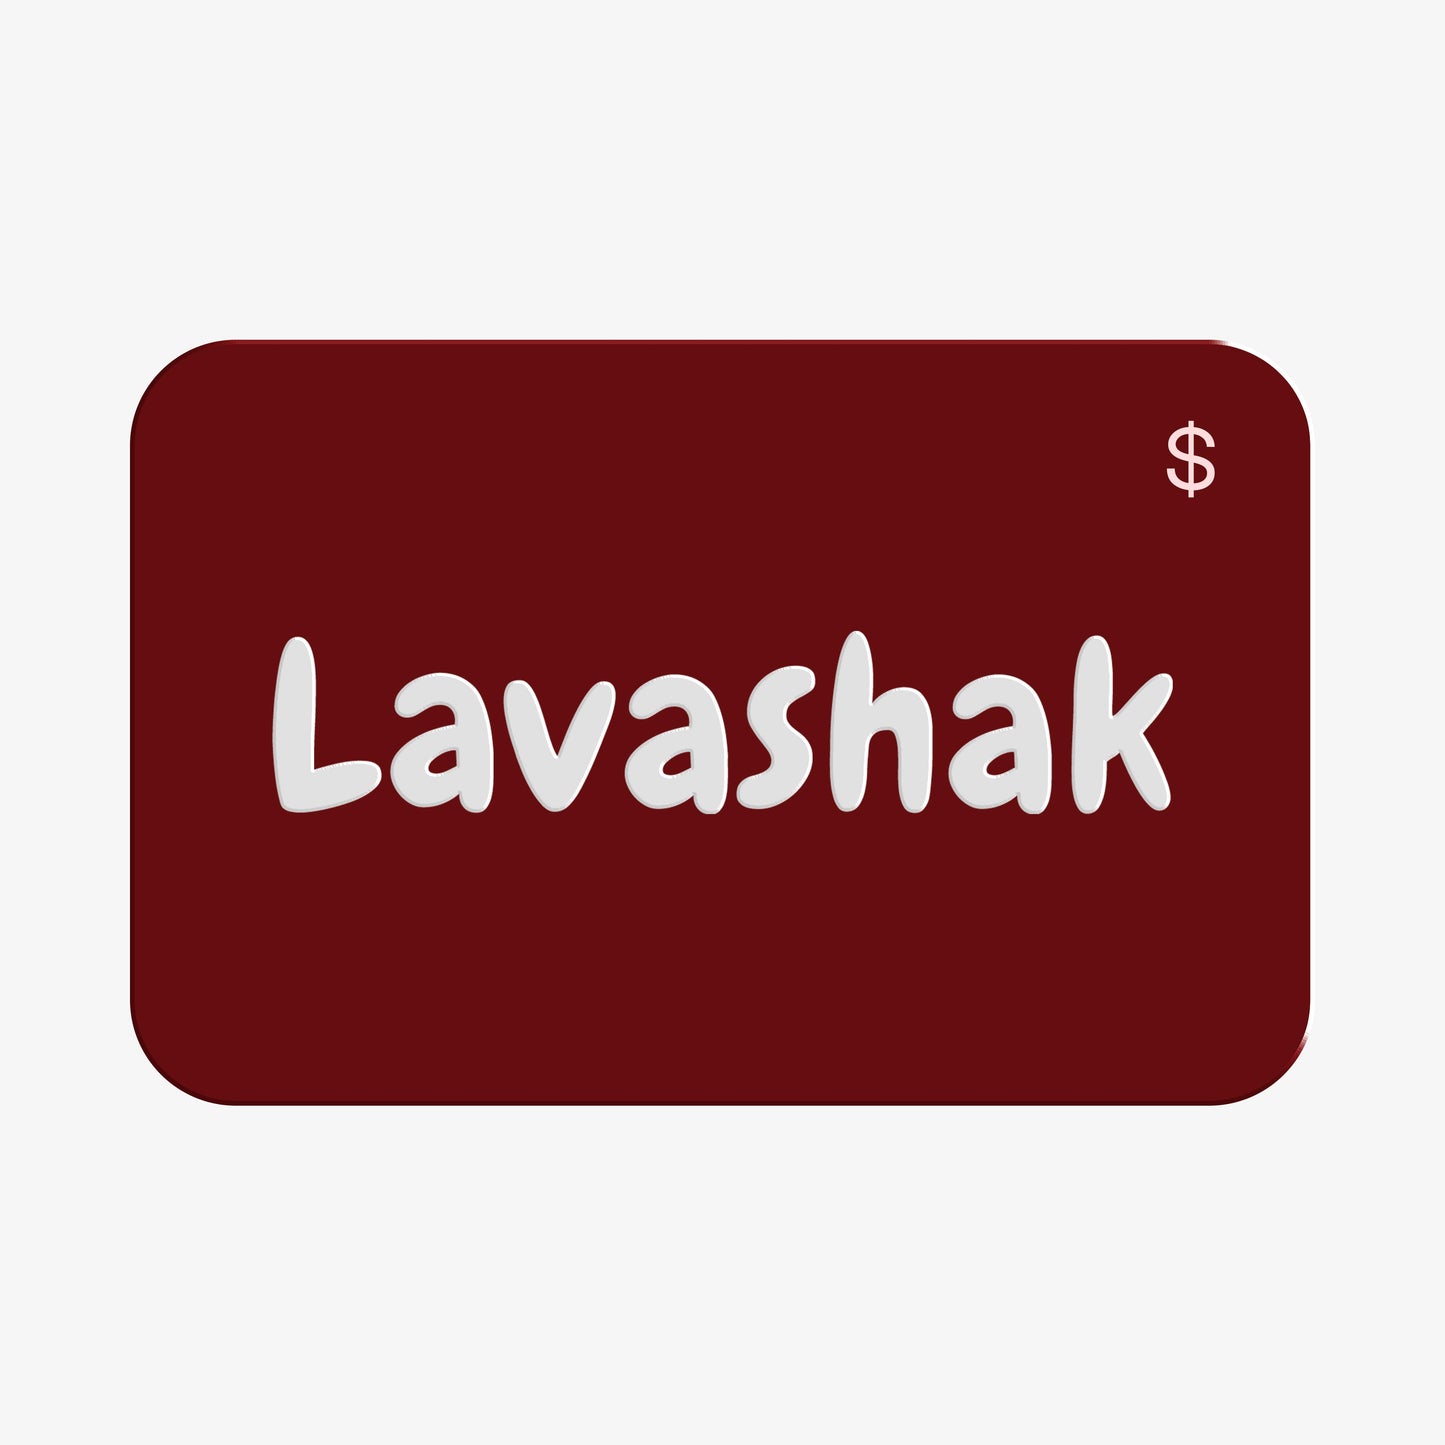 LAVASHAK GIFT CARDS